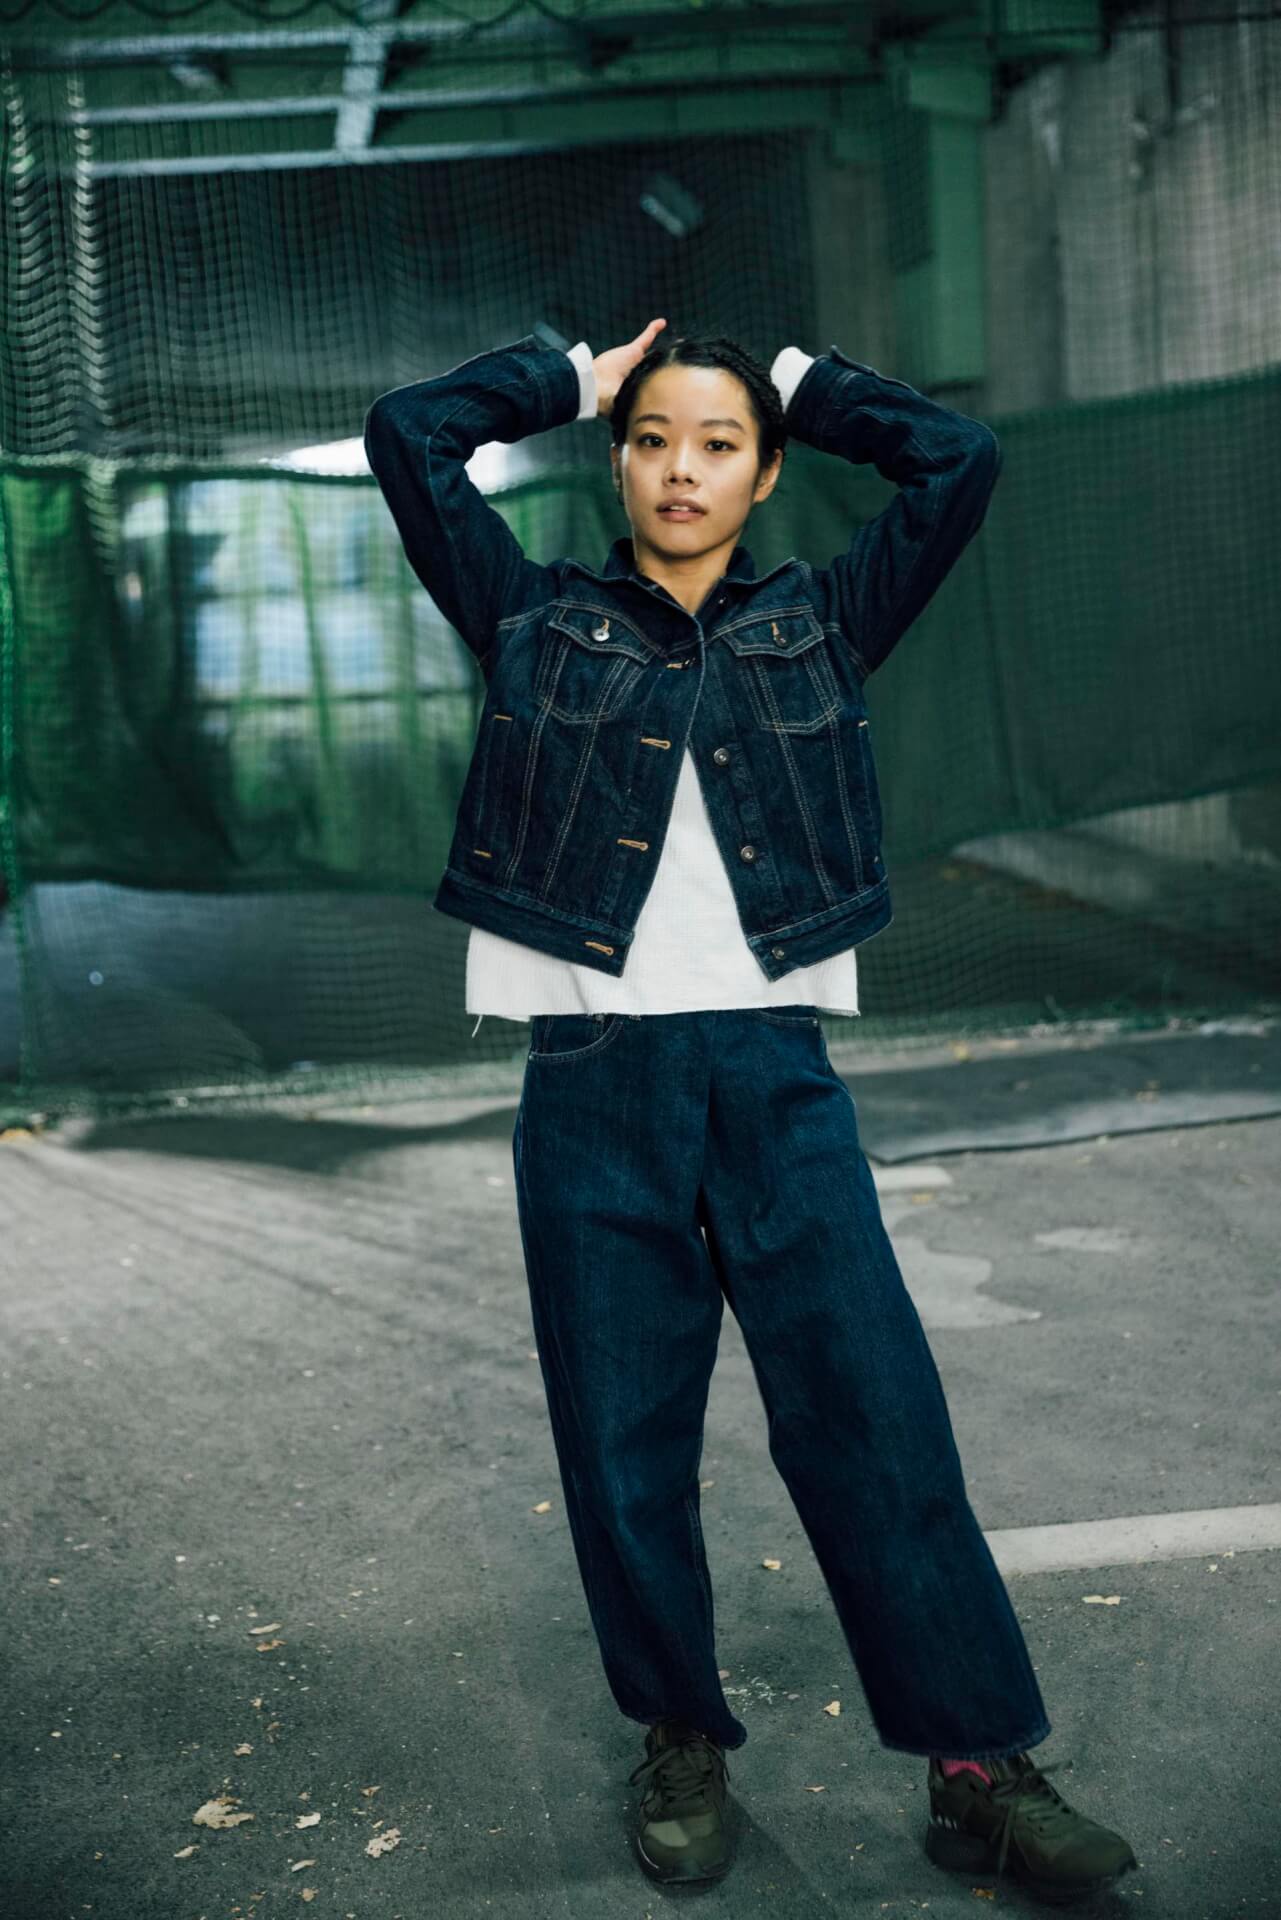 xiangyu × PALLADIUM｜エコなスニーカーから考える“サスティナブル”とファッションの関係性 fashion201221_palladium-026